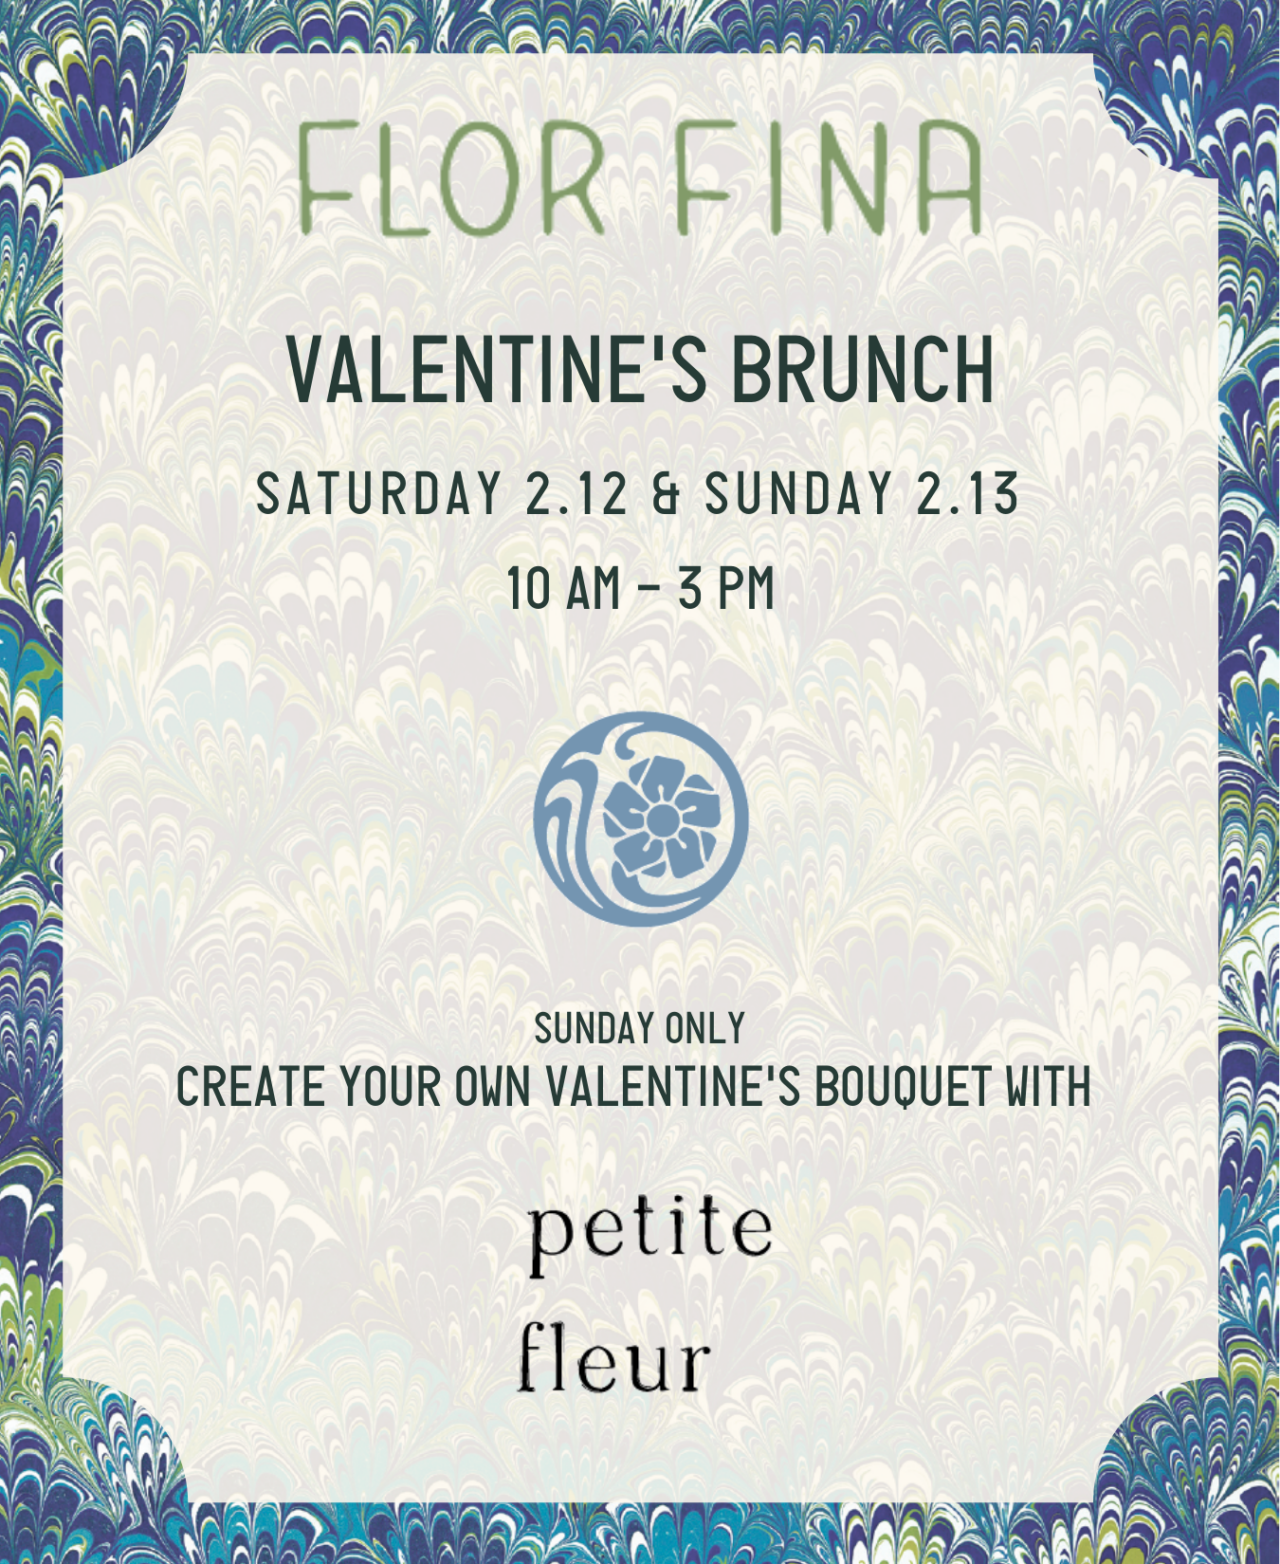 Flor Fina Valentine's brunch poster